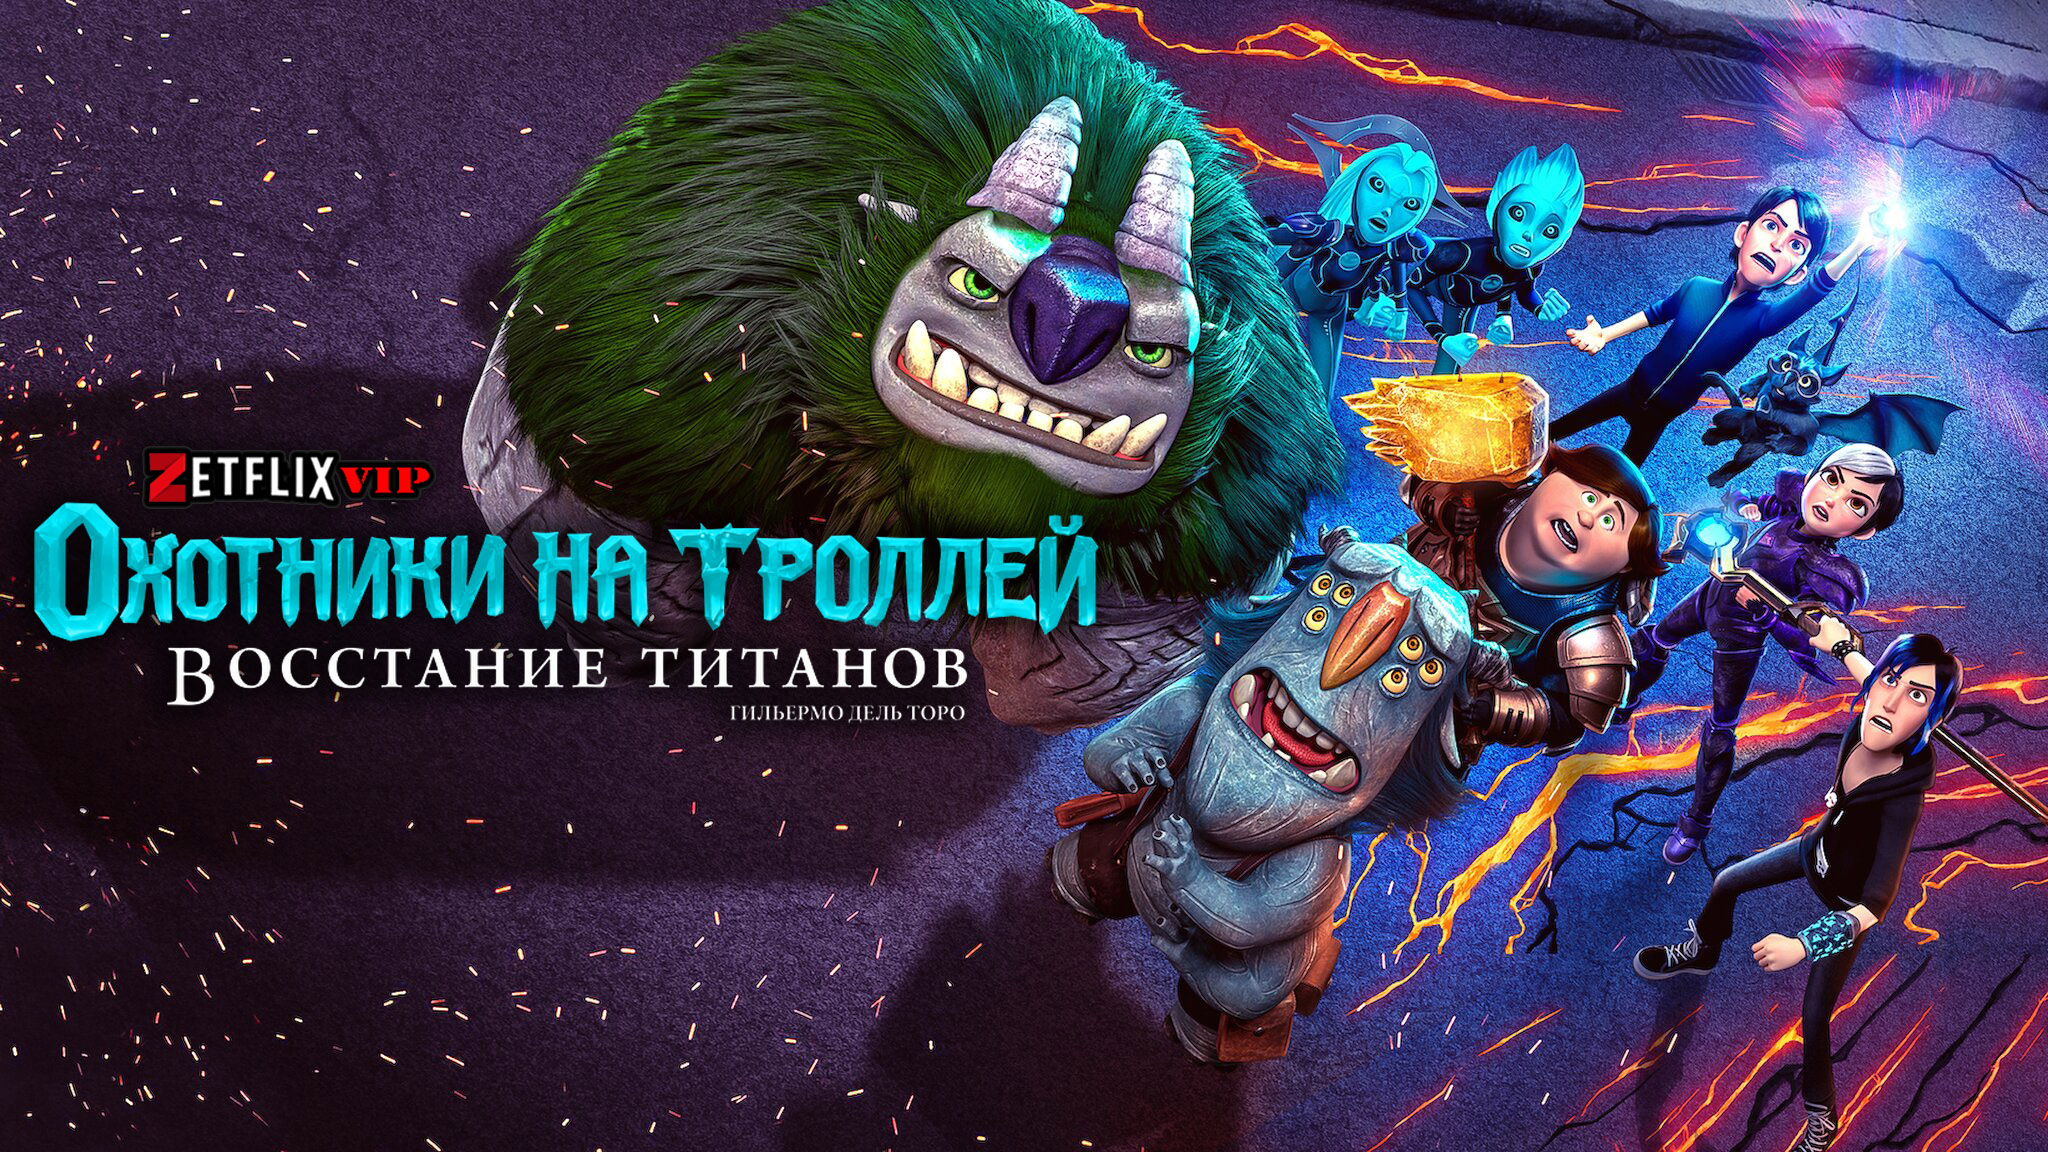 Охотники на троллей: Восстание титанов мультфильм